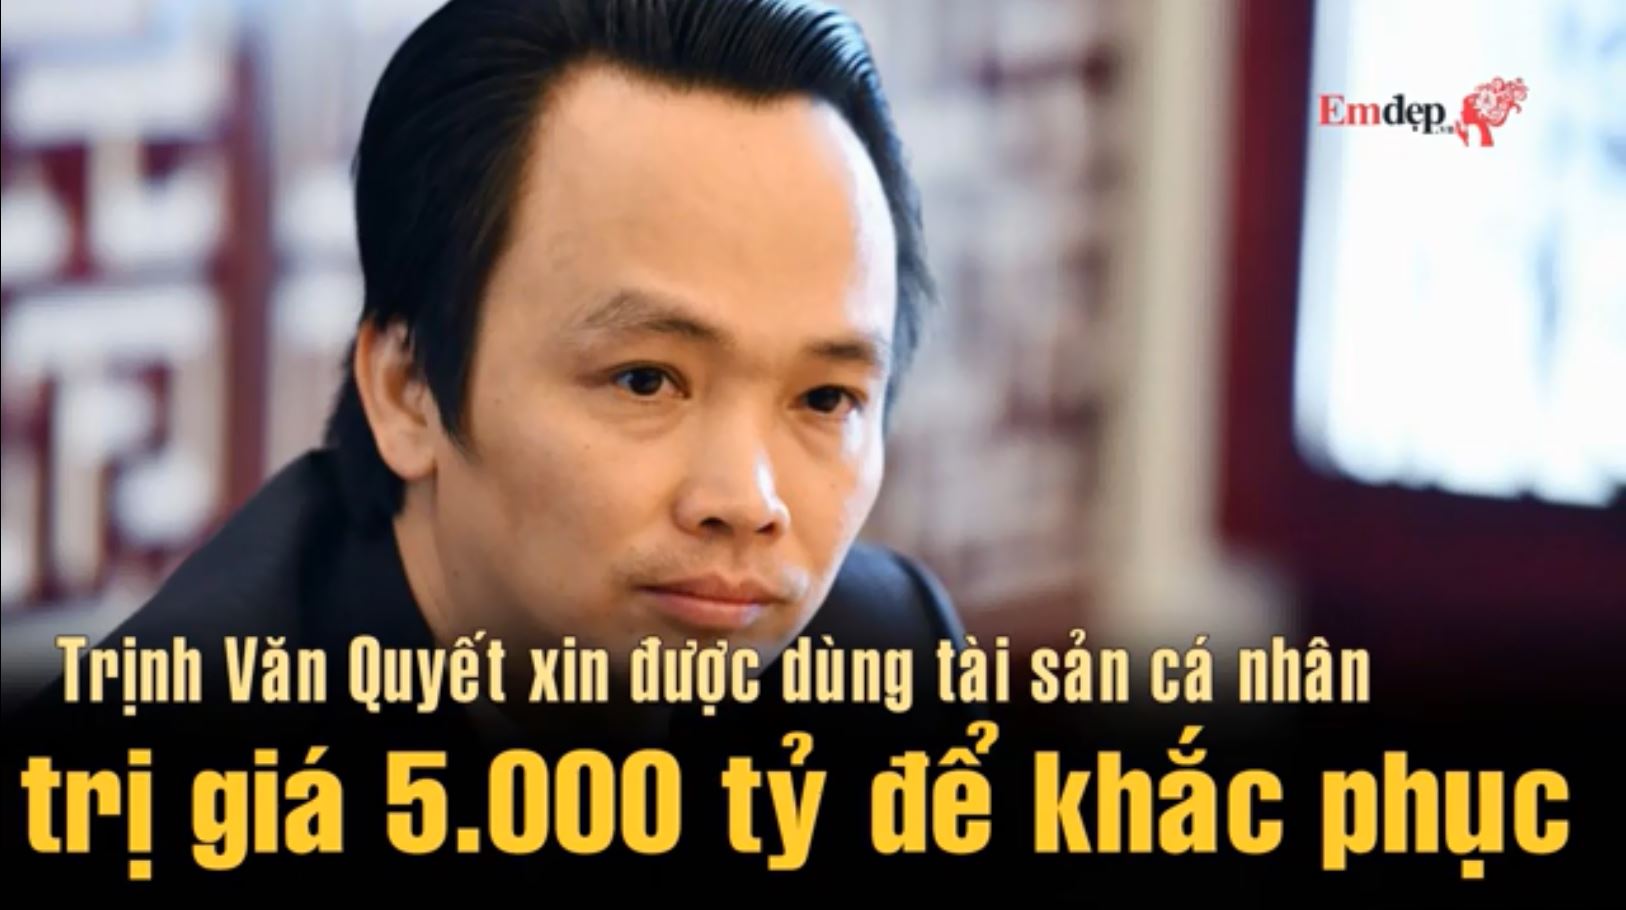 Trịnh Văn Quyết xin được dùng tài sản cá nhân trị giá 5.000 tỷ để khắc phục